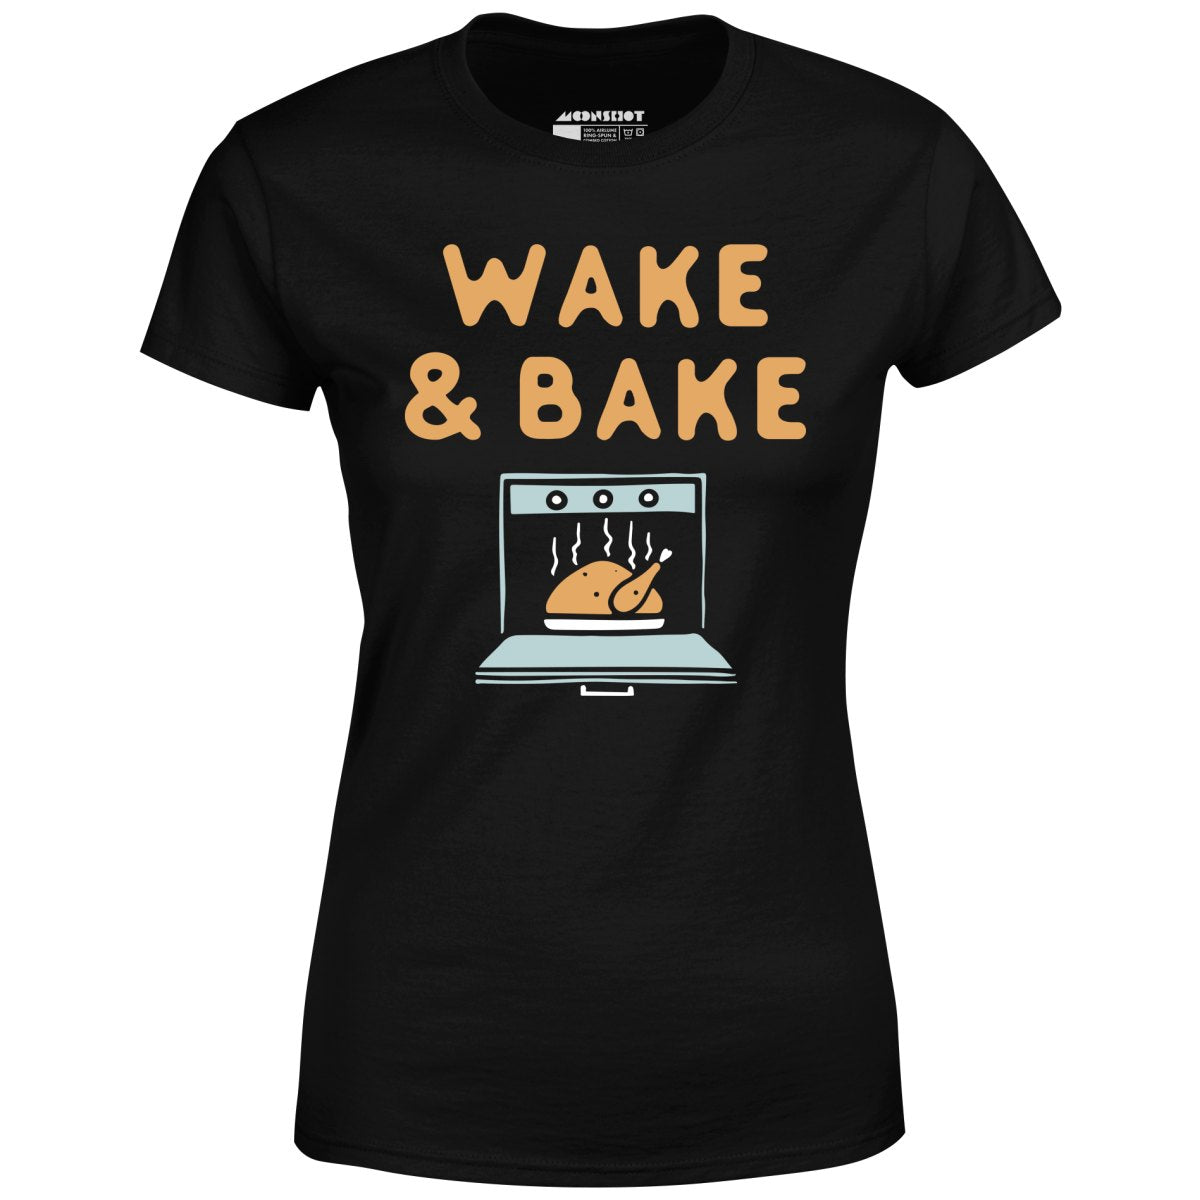 Wake & Bake - Women's T-Shirt